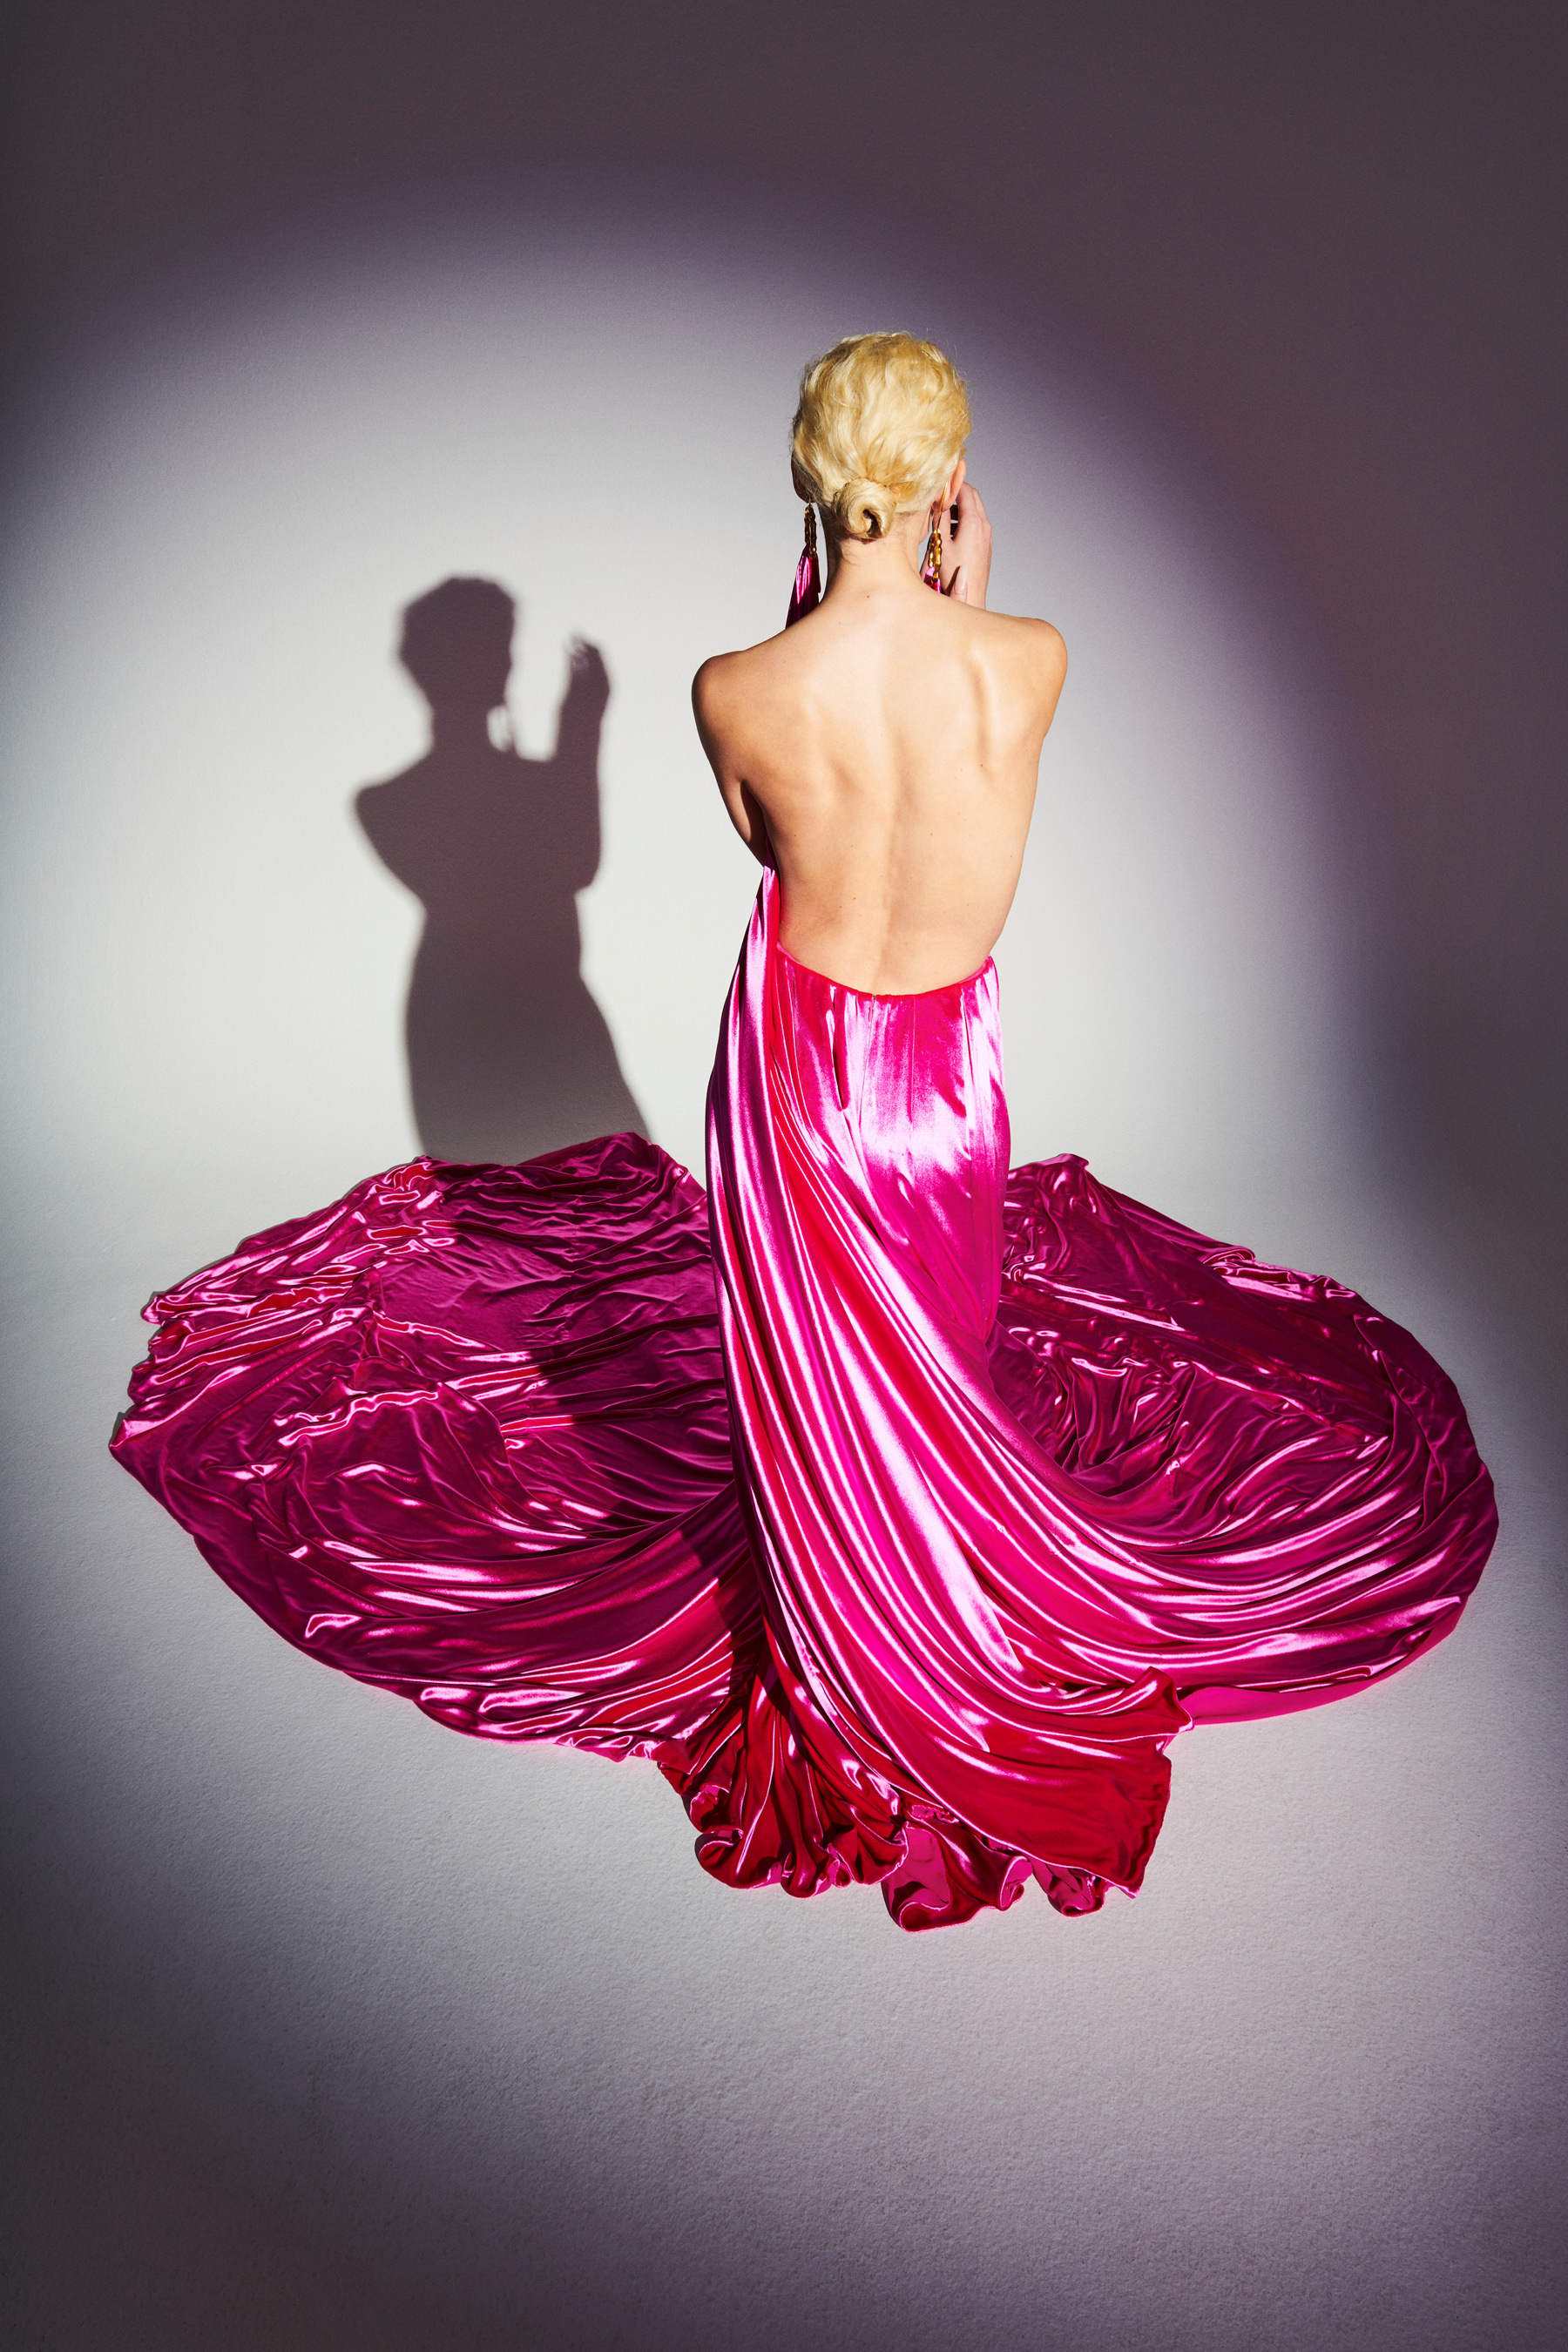 Schiaparelli Spring 2021 Couture Details